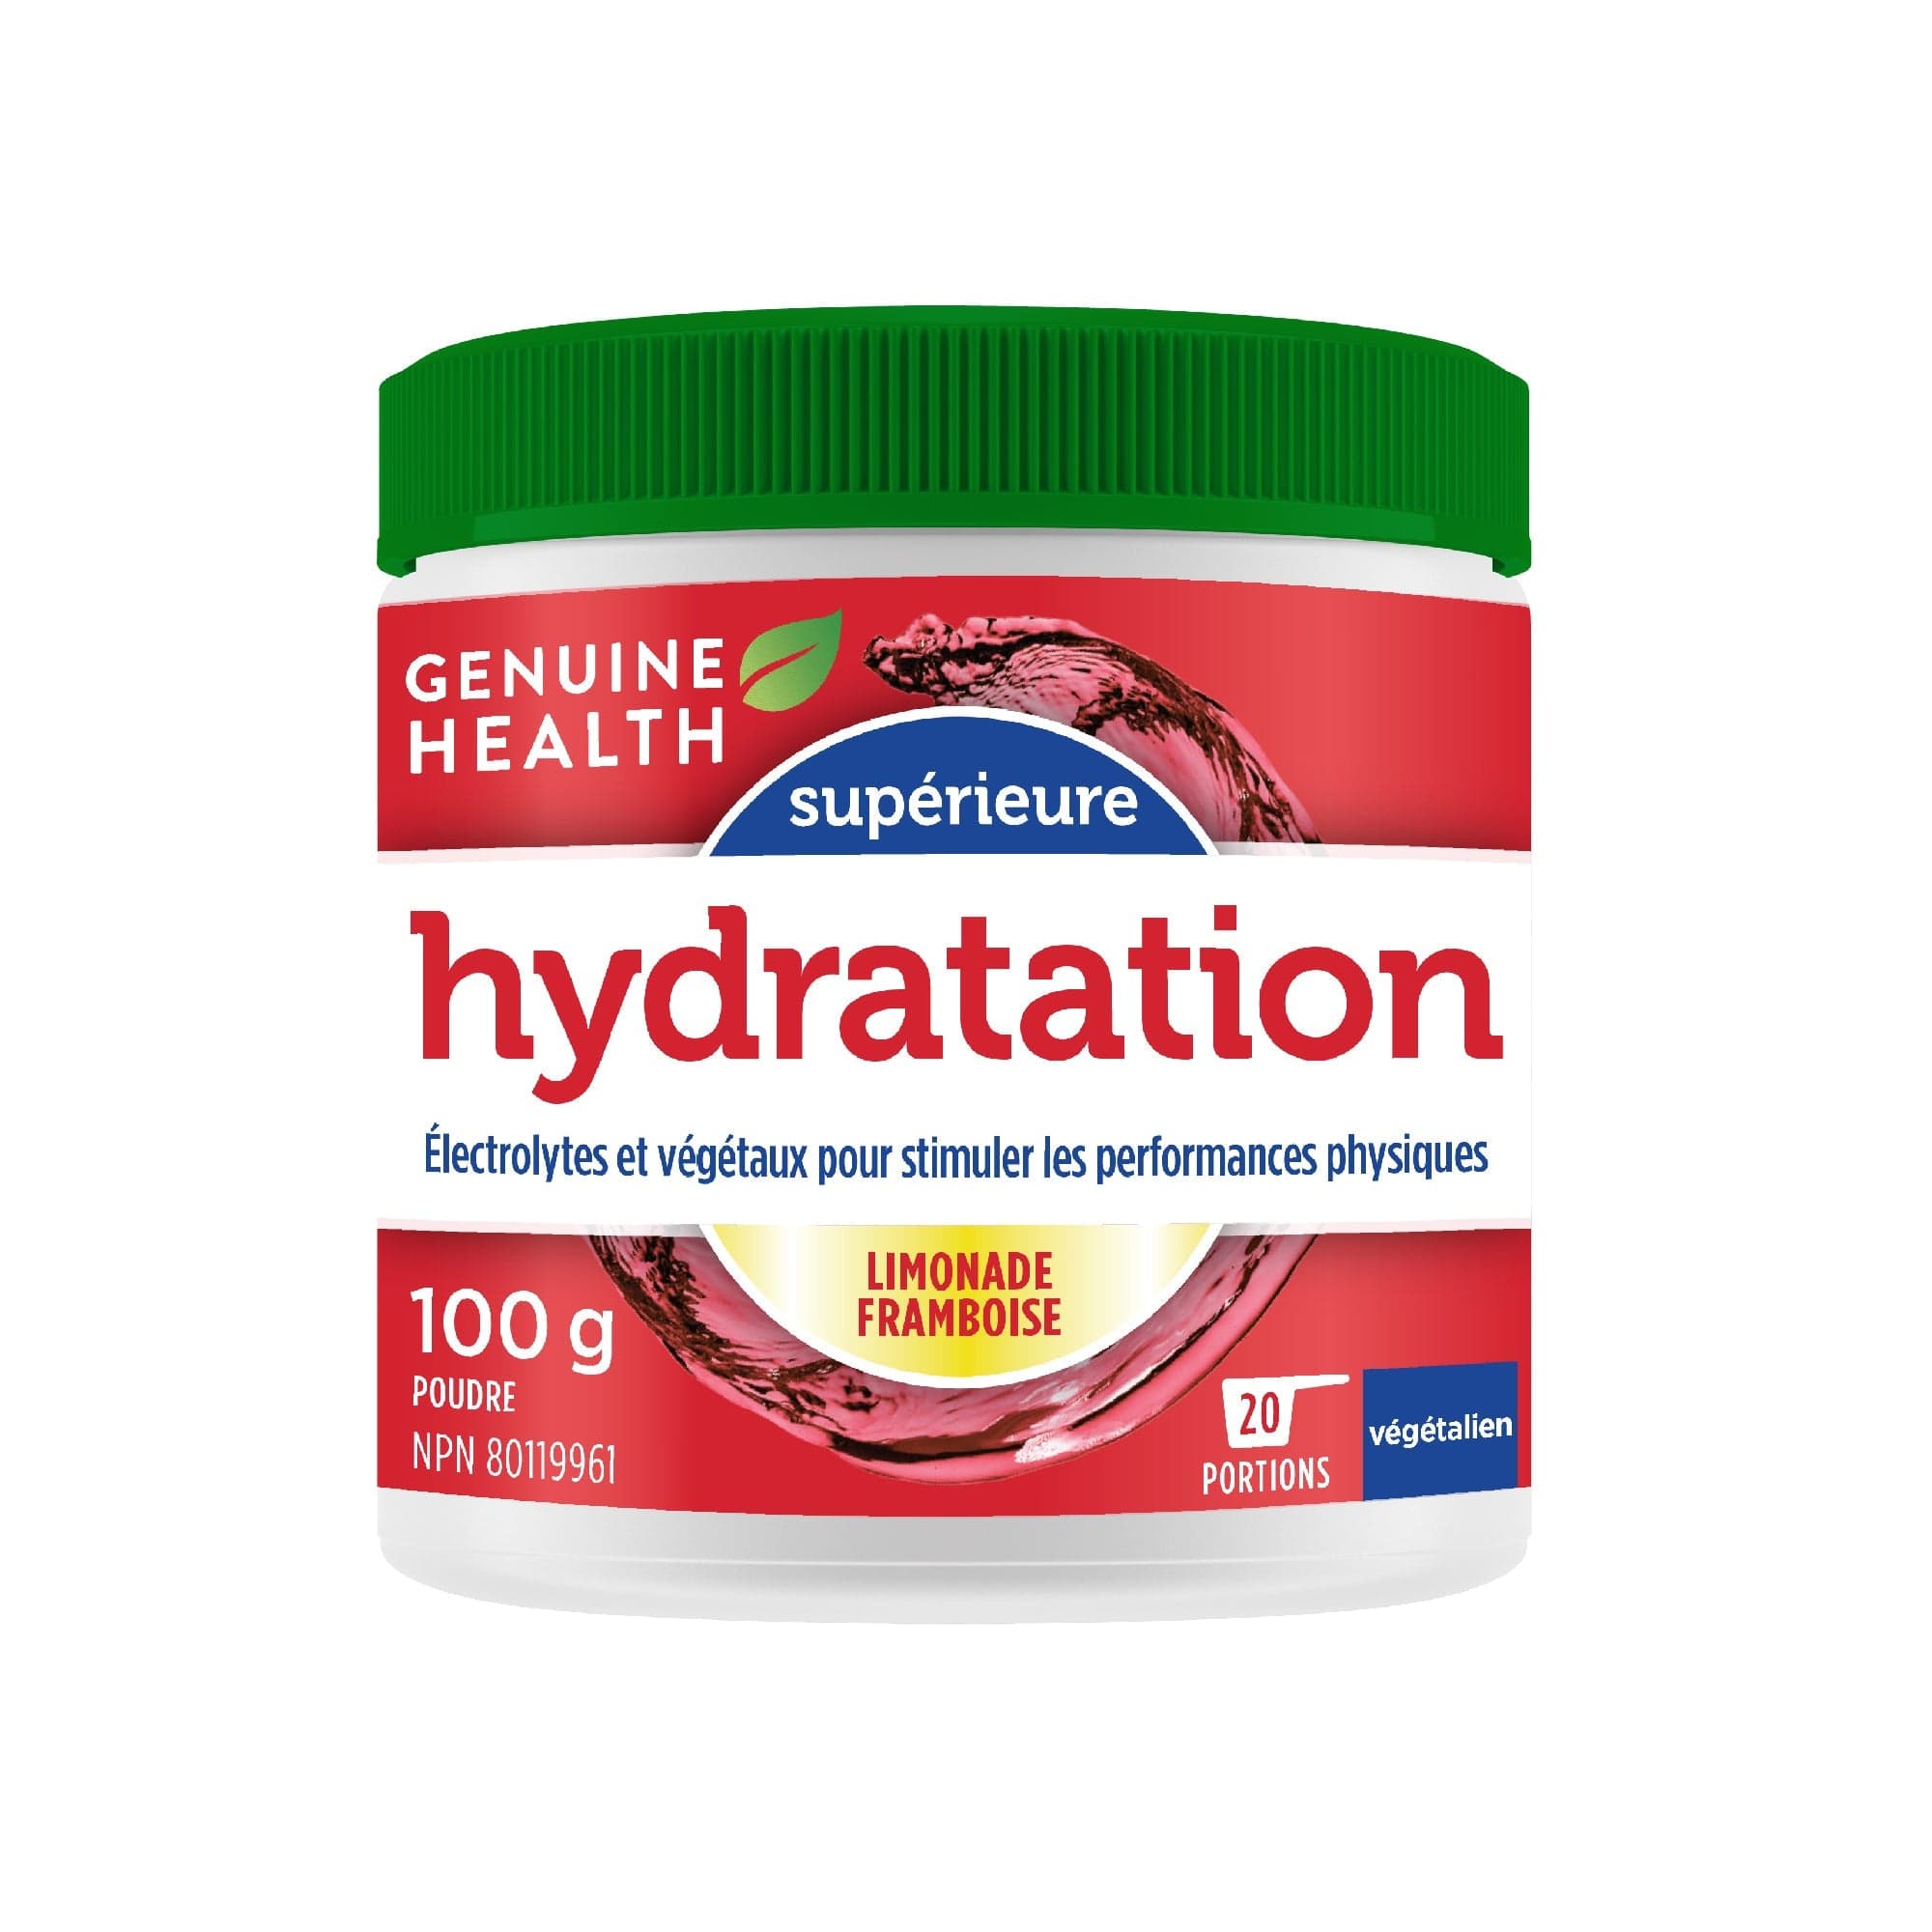 GENUINE HEALTH Suppléments Enhanced hydratation (limonade framboises)  100g
DATE DE PÉREMPTION : 31 OCTOBRE 2024